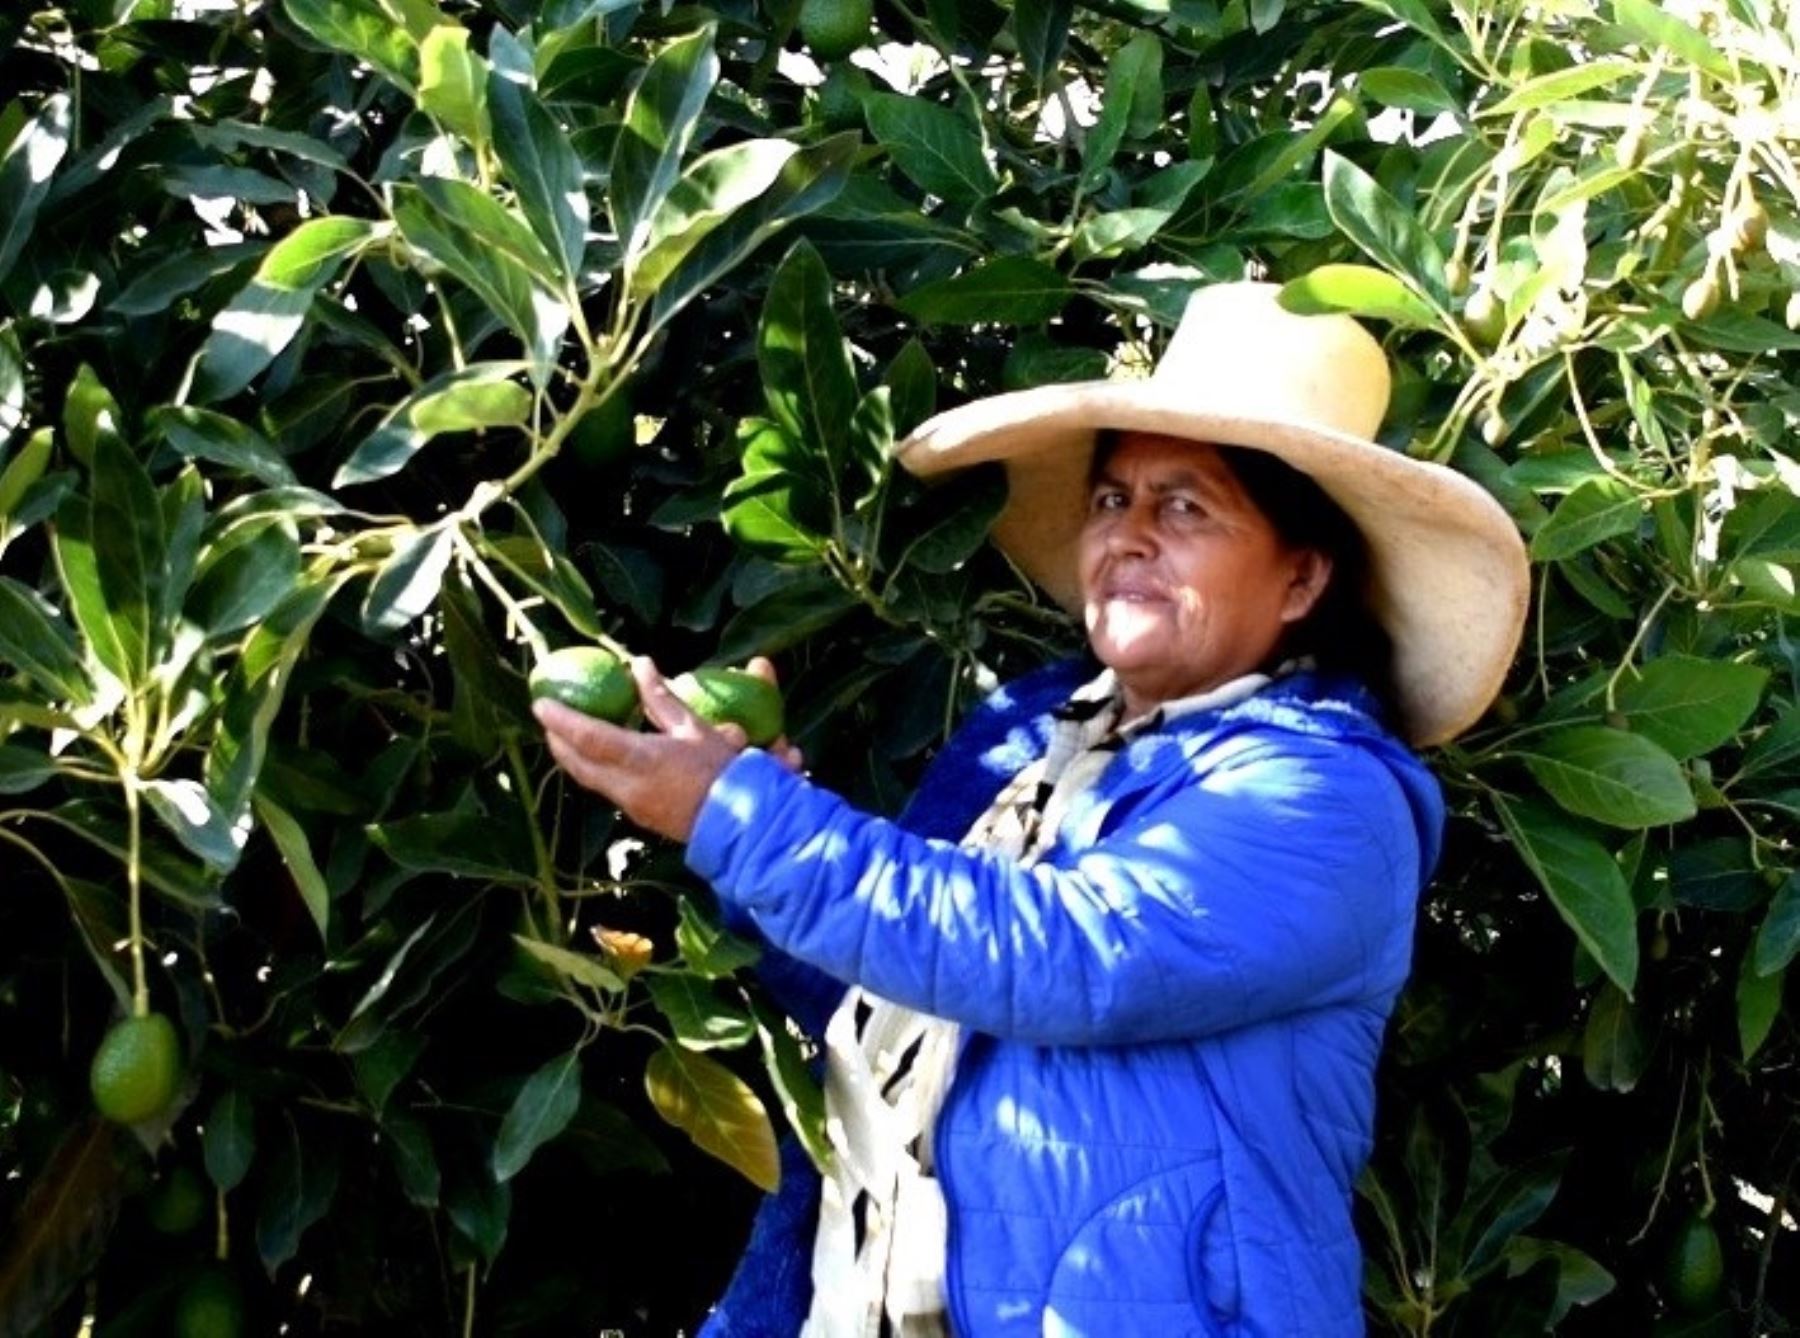 Clotilda Román se ha convertido en una ejemplar productora en su pueblo Cochorco, ubicado en la provincia de Sánchez Carrión, región La Libertad. Su apuesta por el cultivo de palta la ha convertido en una exitosa emprendedora. Foto: Luis Puell